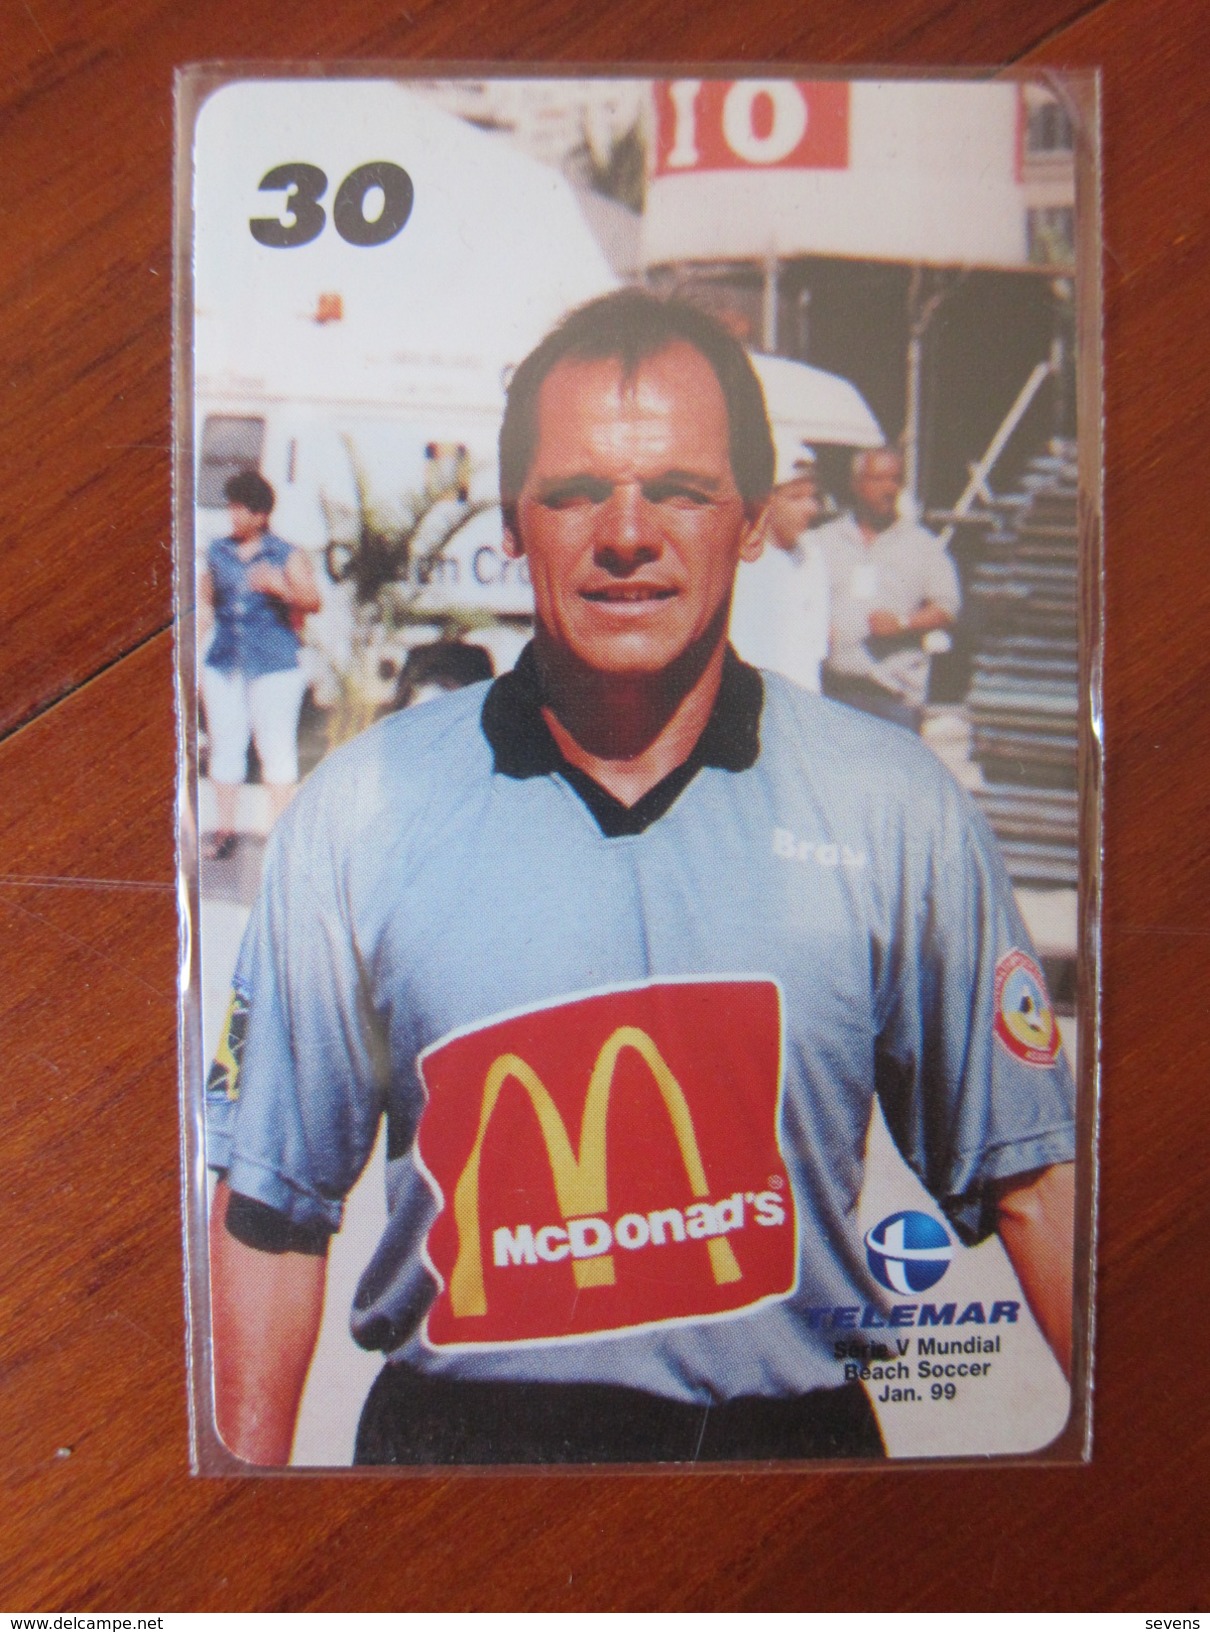 Telemar Inductive Phonecard, Beach Soccer Player Wears McDonald's Shirt, 1/10, Mint(only5000 Pcs) - Brasilien